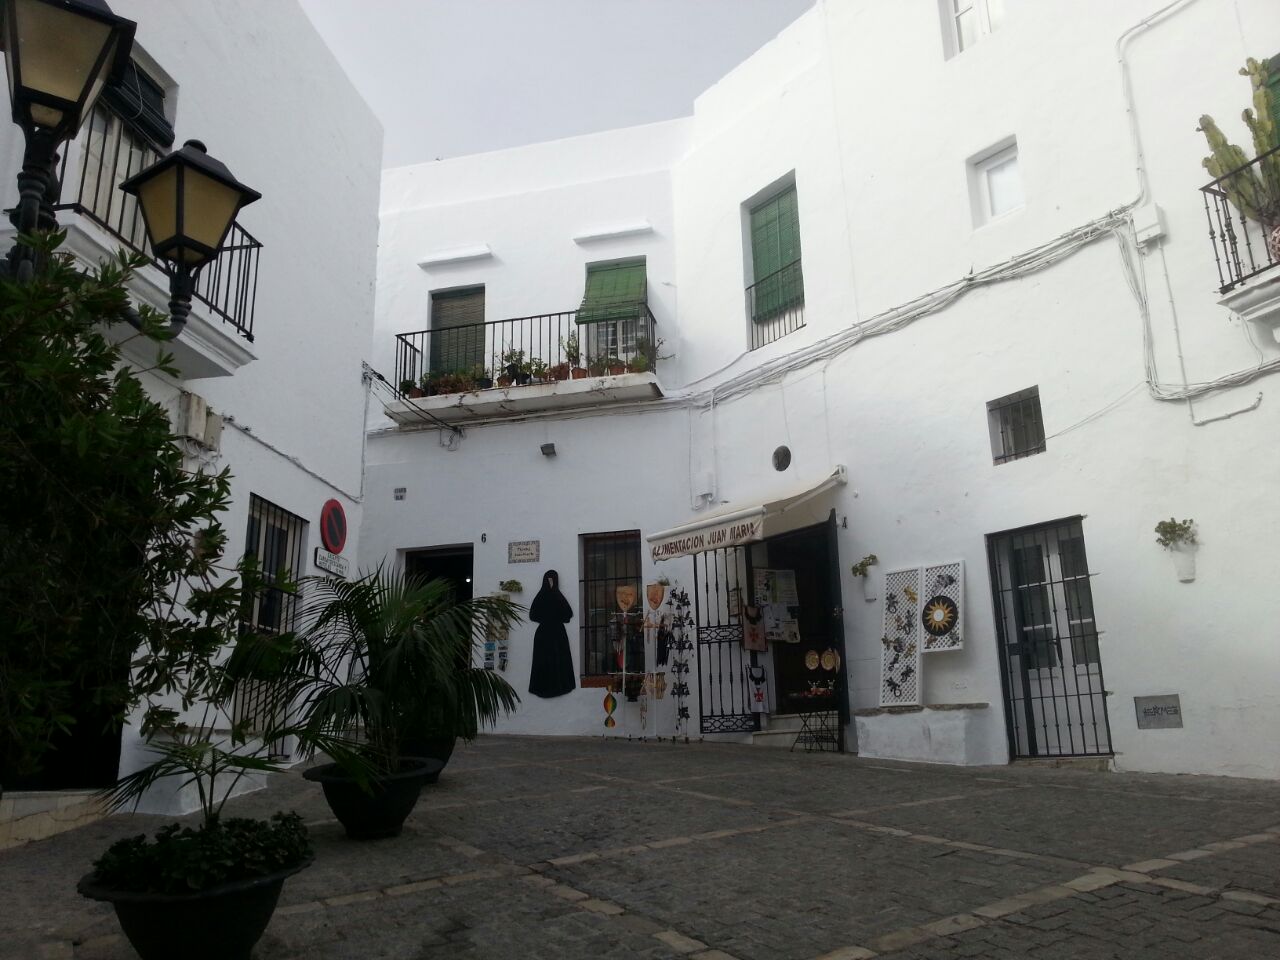 Ausflüge nach Tarifa, Vejer, Barbate und Canos de Meca und nach Cadiz mit seiner schönen Altstadt